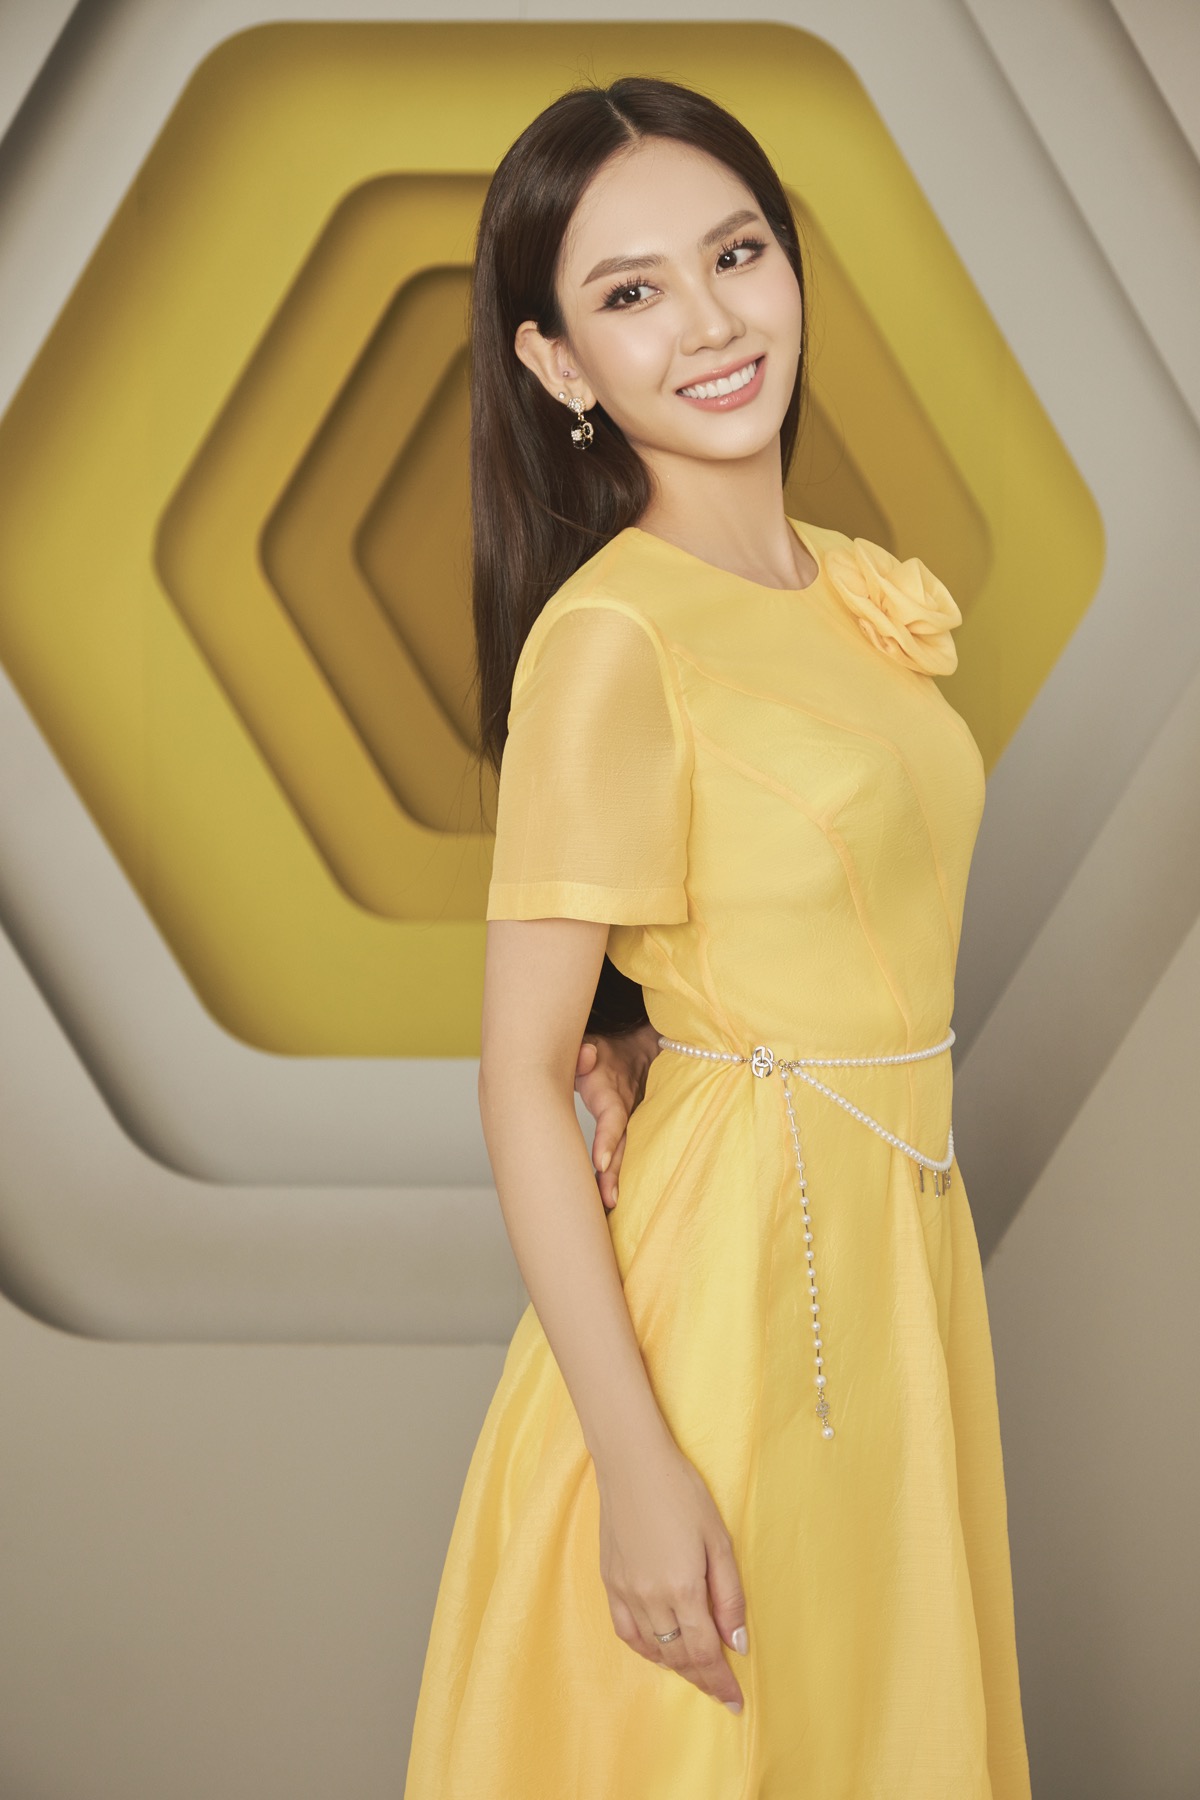 Huỳnh Nguyễn Mai Phương (SN 1999) đã giành vương miện cuộc thi Miss World Việt Nam hồi tháng 8/2022. Trước đó, cô từng đăng quang Hoa khôi Đại học Đồng Nai 2018. Trong cuộc thi Hoa hậu Việt Nam 2020, cô đã lọt vào top 5 chung cuộc với giải thưởng phụ “Người đẹp Nhân ái“.